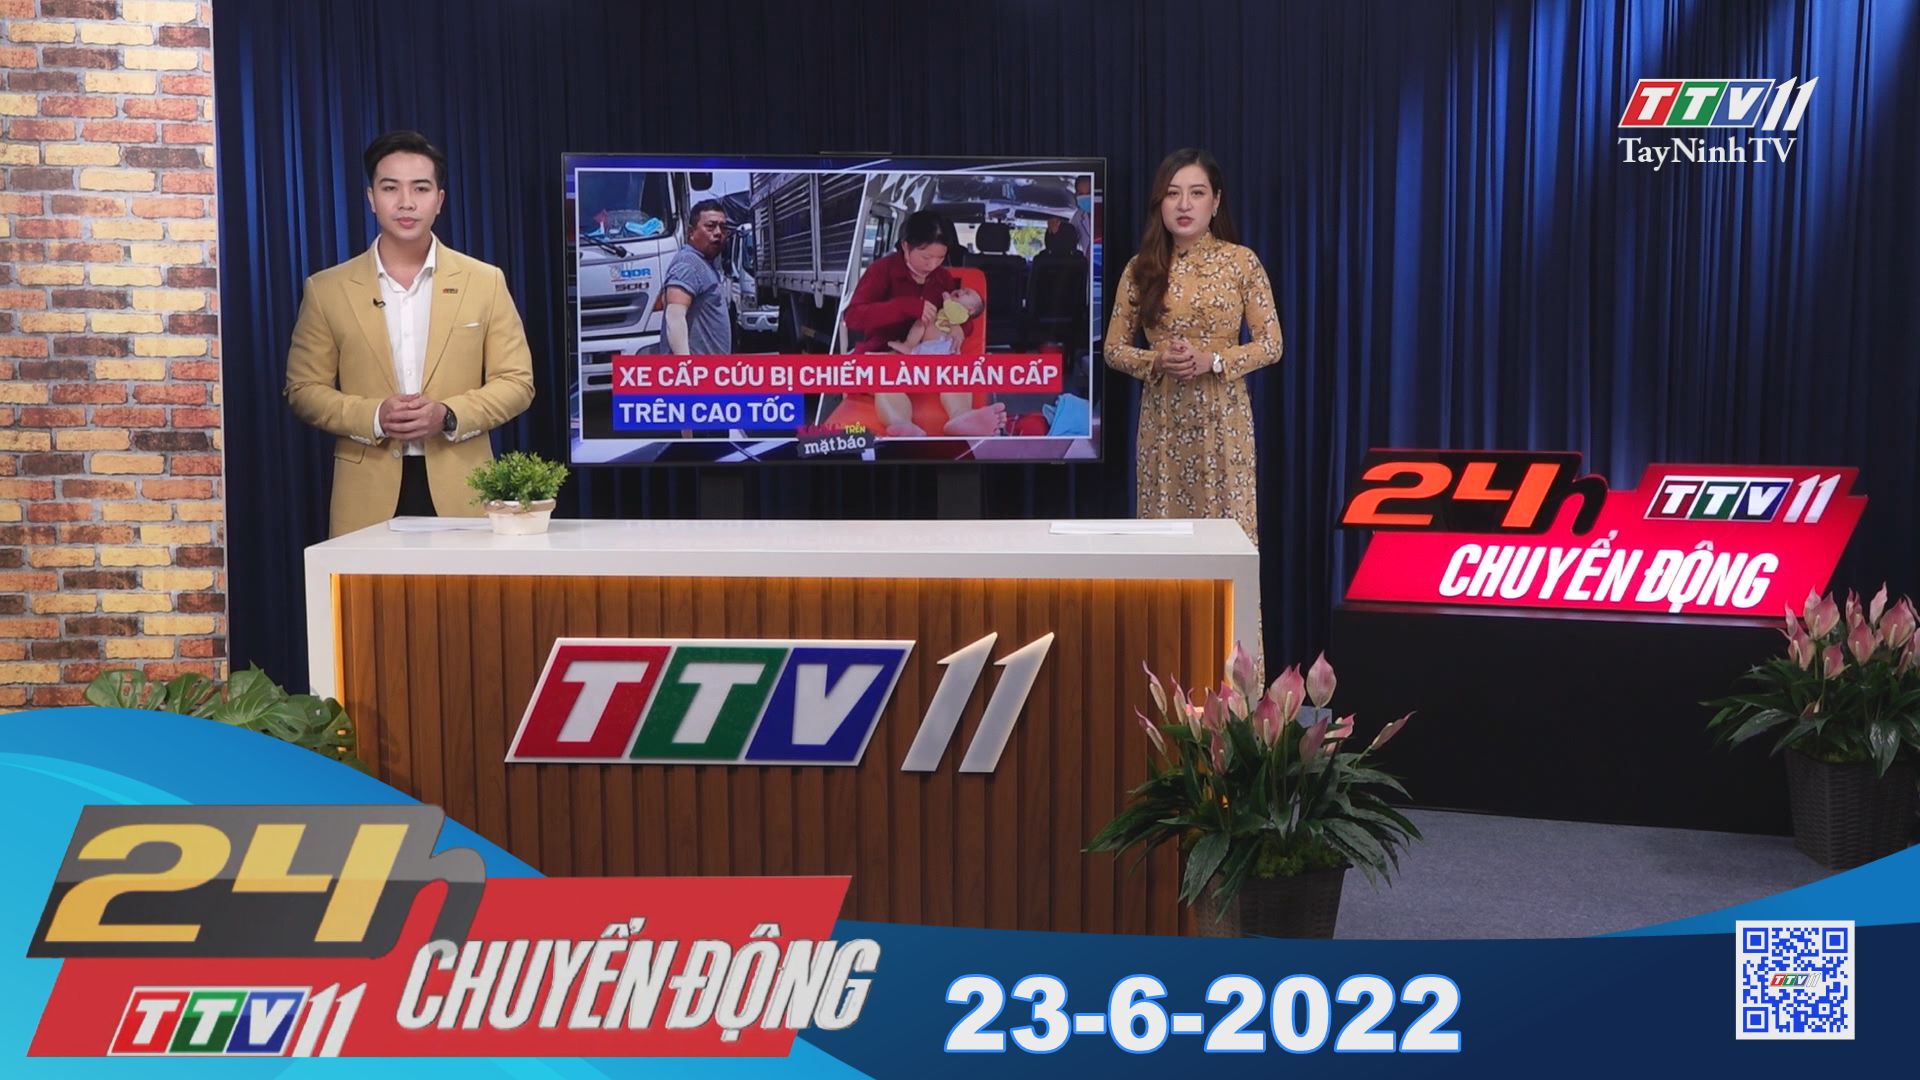 24h Chuyển động 23-6-2022 | Tin tức hôm nay | TayNinhTV